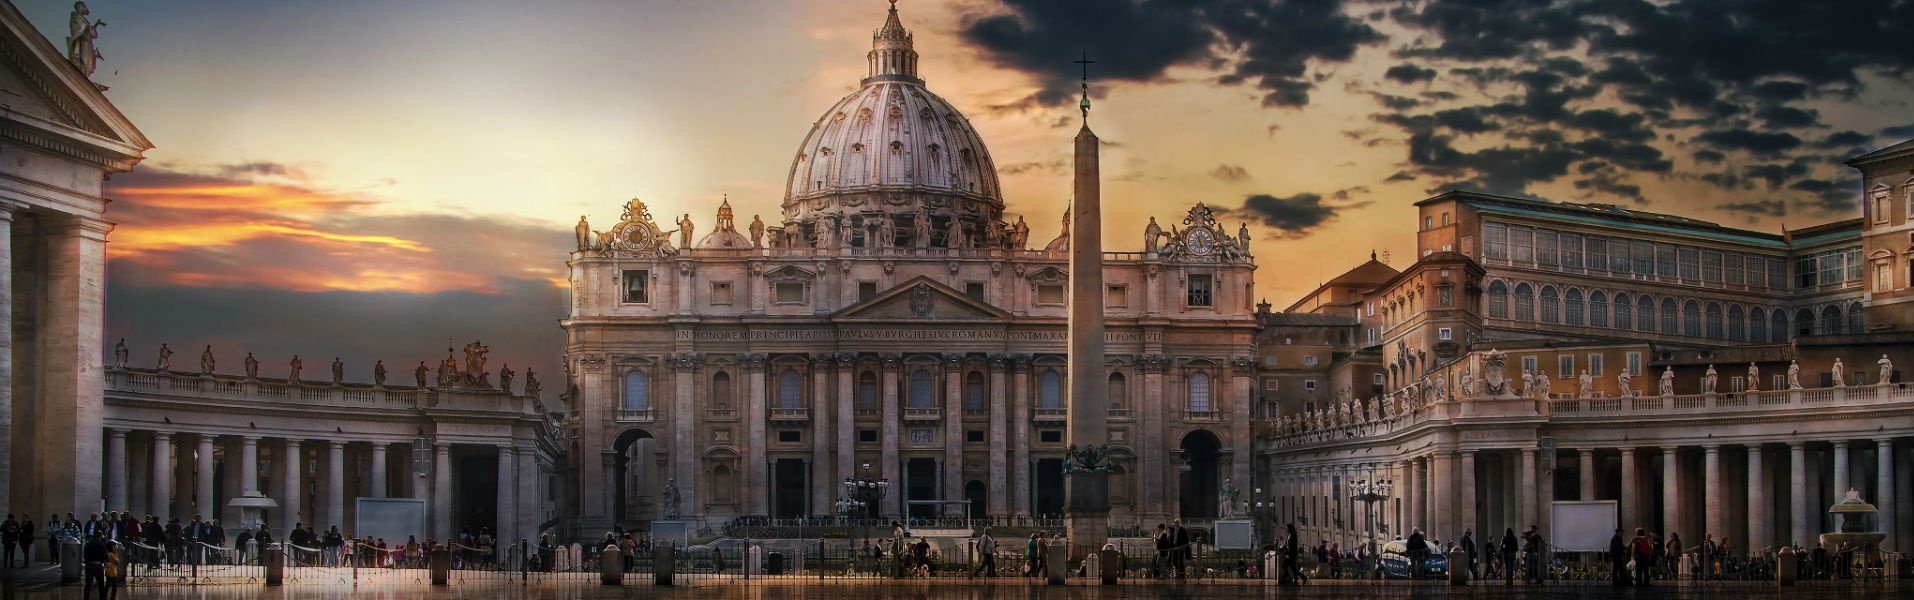 Idee per il Ponte dei Santi 2018: la Roma del Papa, dei monumenti, delle chiese e dei quartieri storici (in questa foto la Basilica di San Pietro)